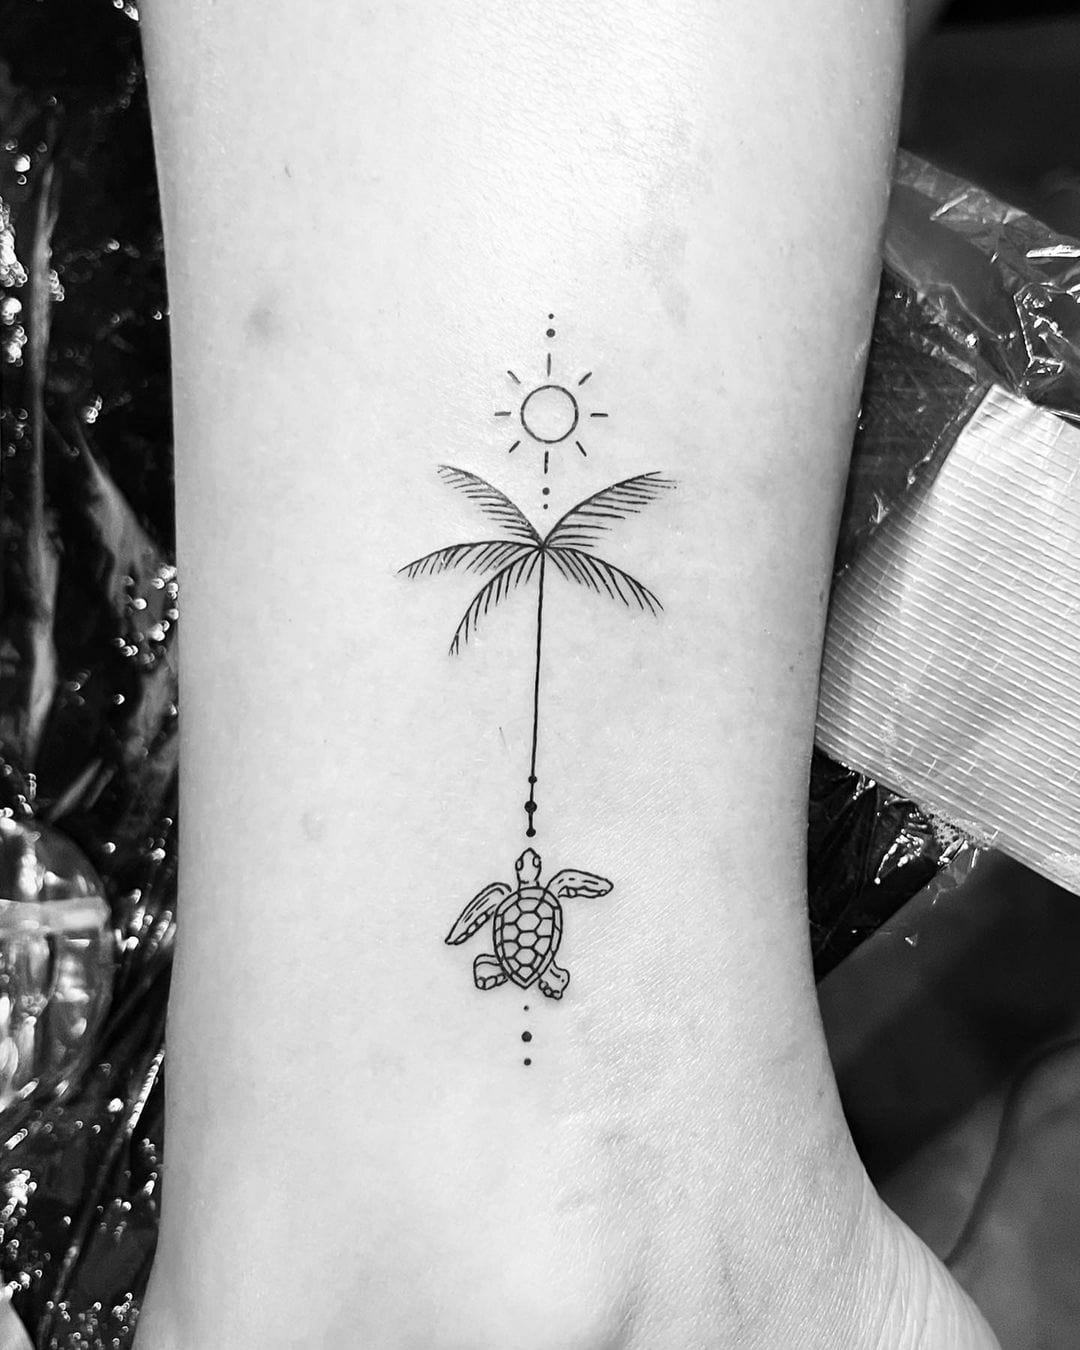 Brother Tattooz - Palm tree tattoo done at @brothertattooz... | Facebook